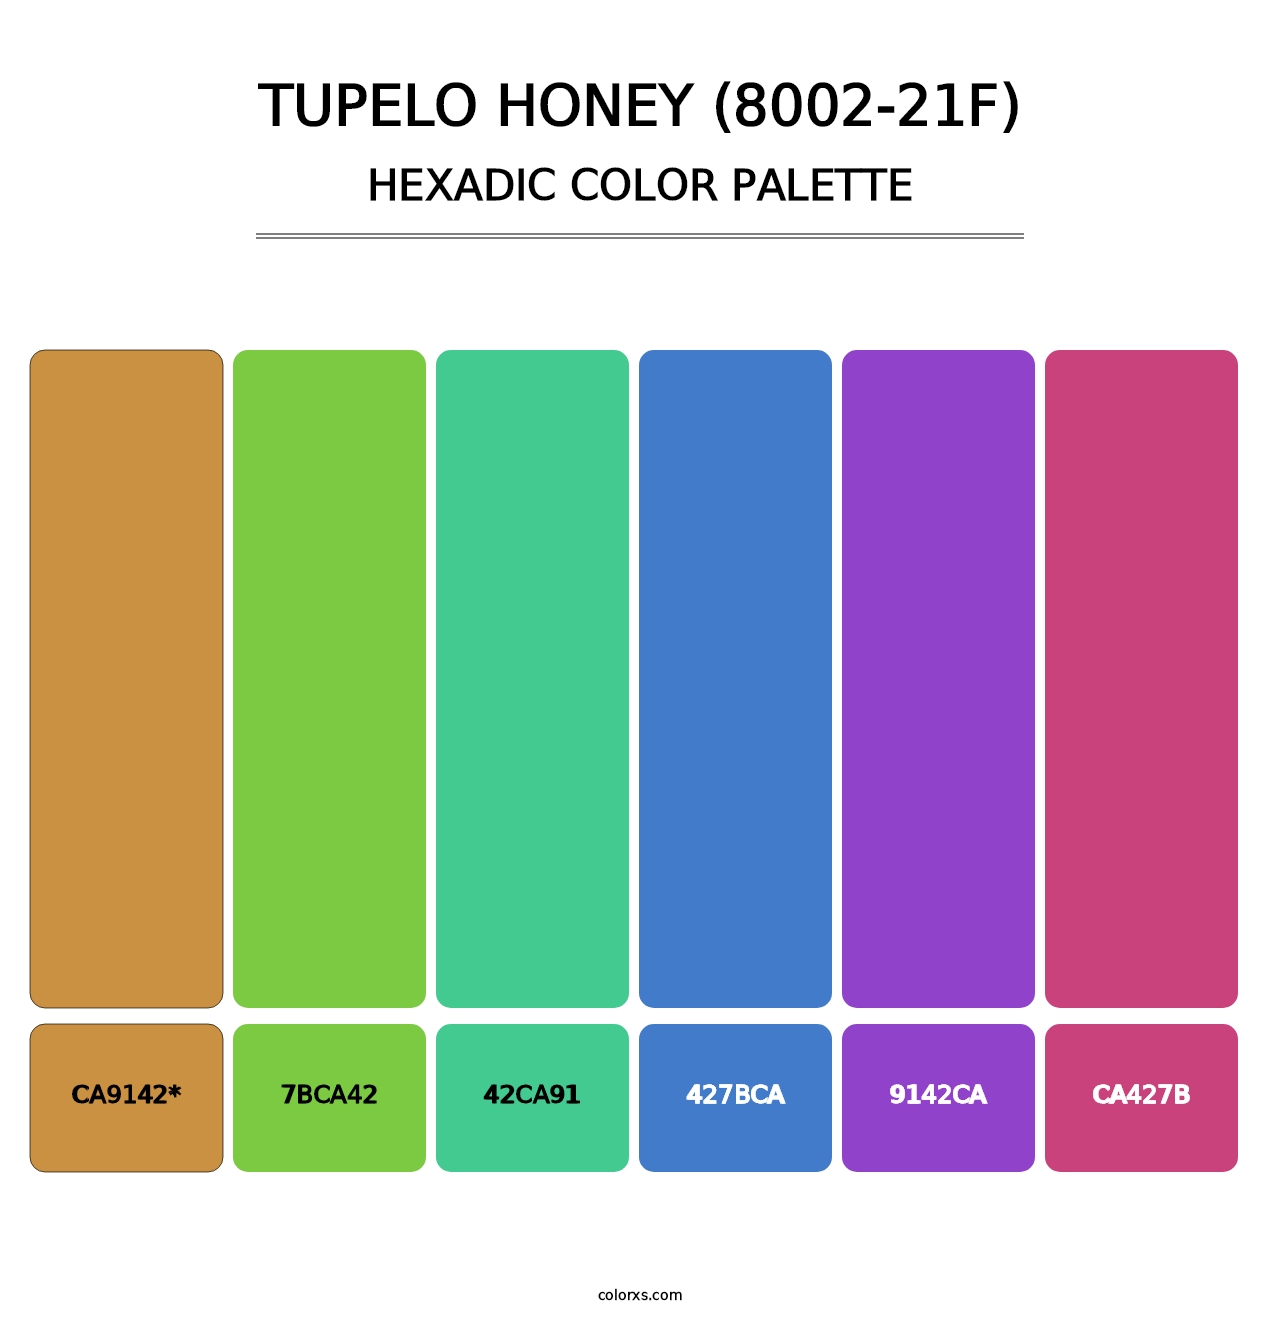 Tupelo Honey (8002-21F) - Hexadic Color Palette